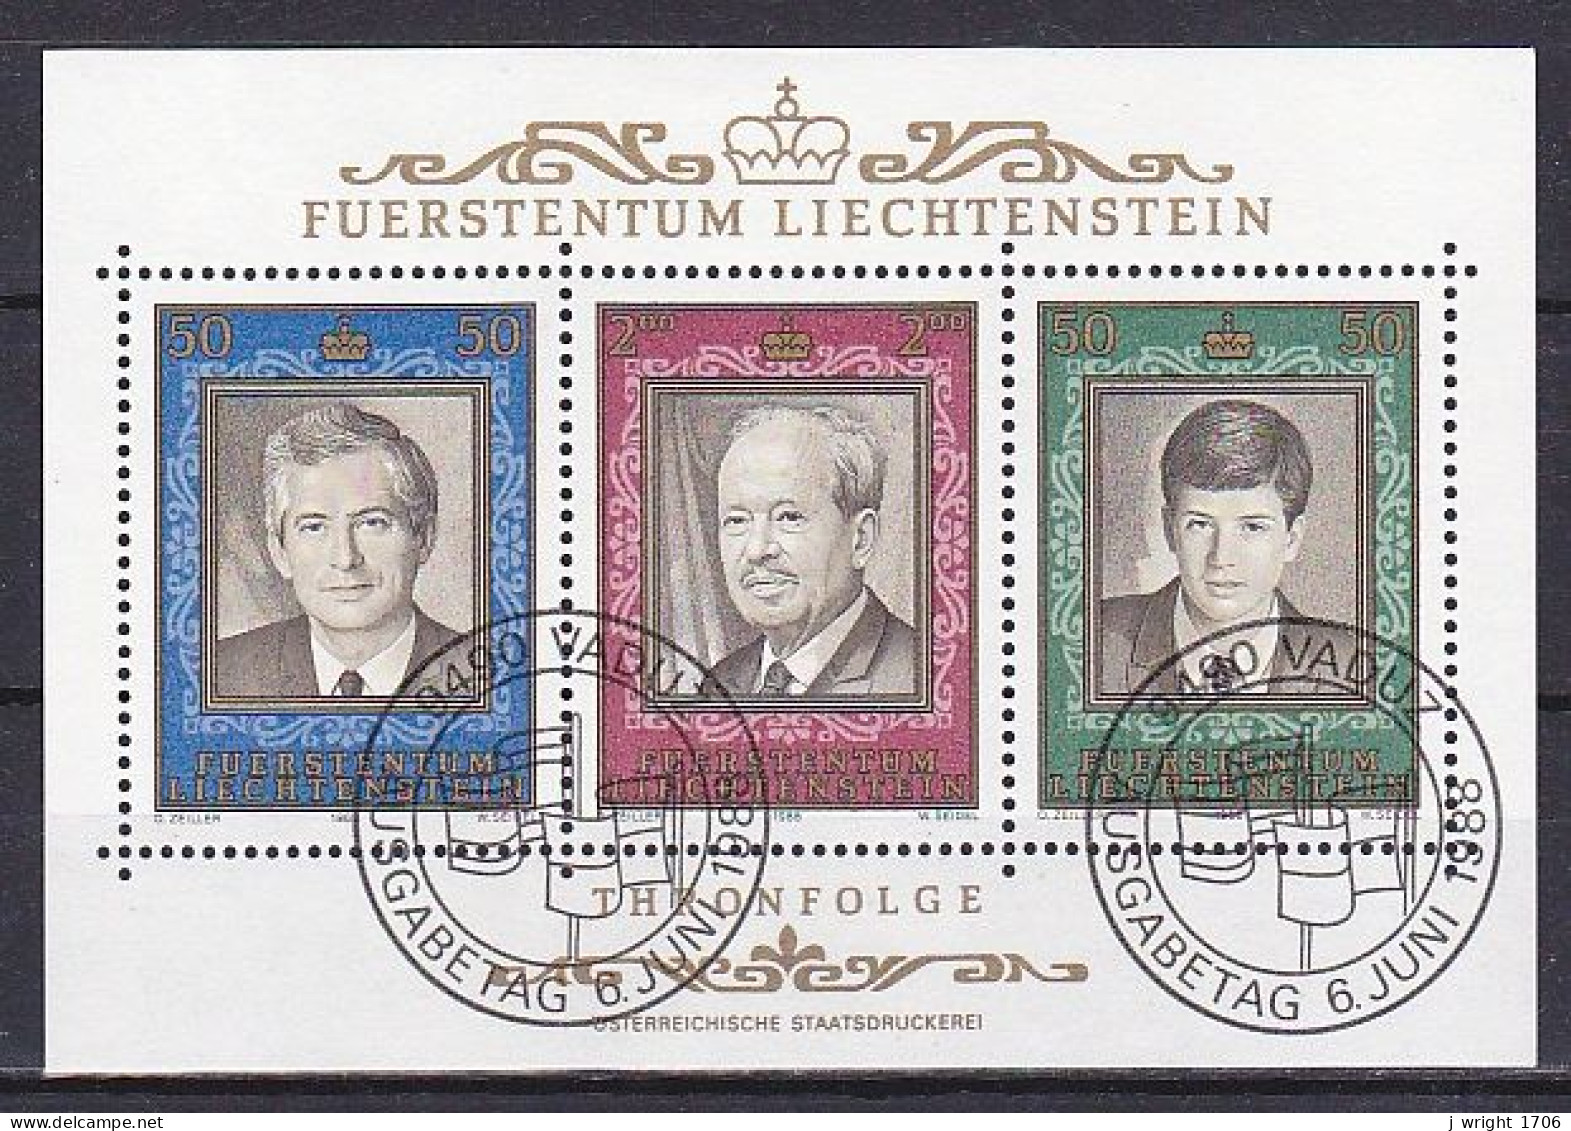 Liechtenstein, 1988, Prince Franz Joseph II Reign 50th Anniv, Block, CTO - Blocks & Sheetlets & Panes